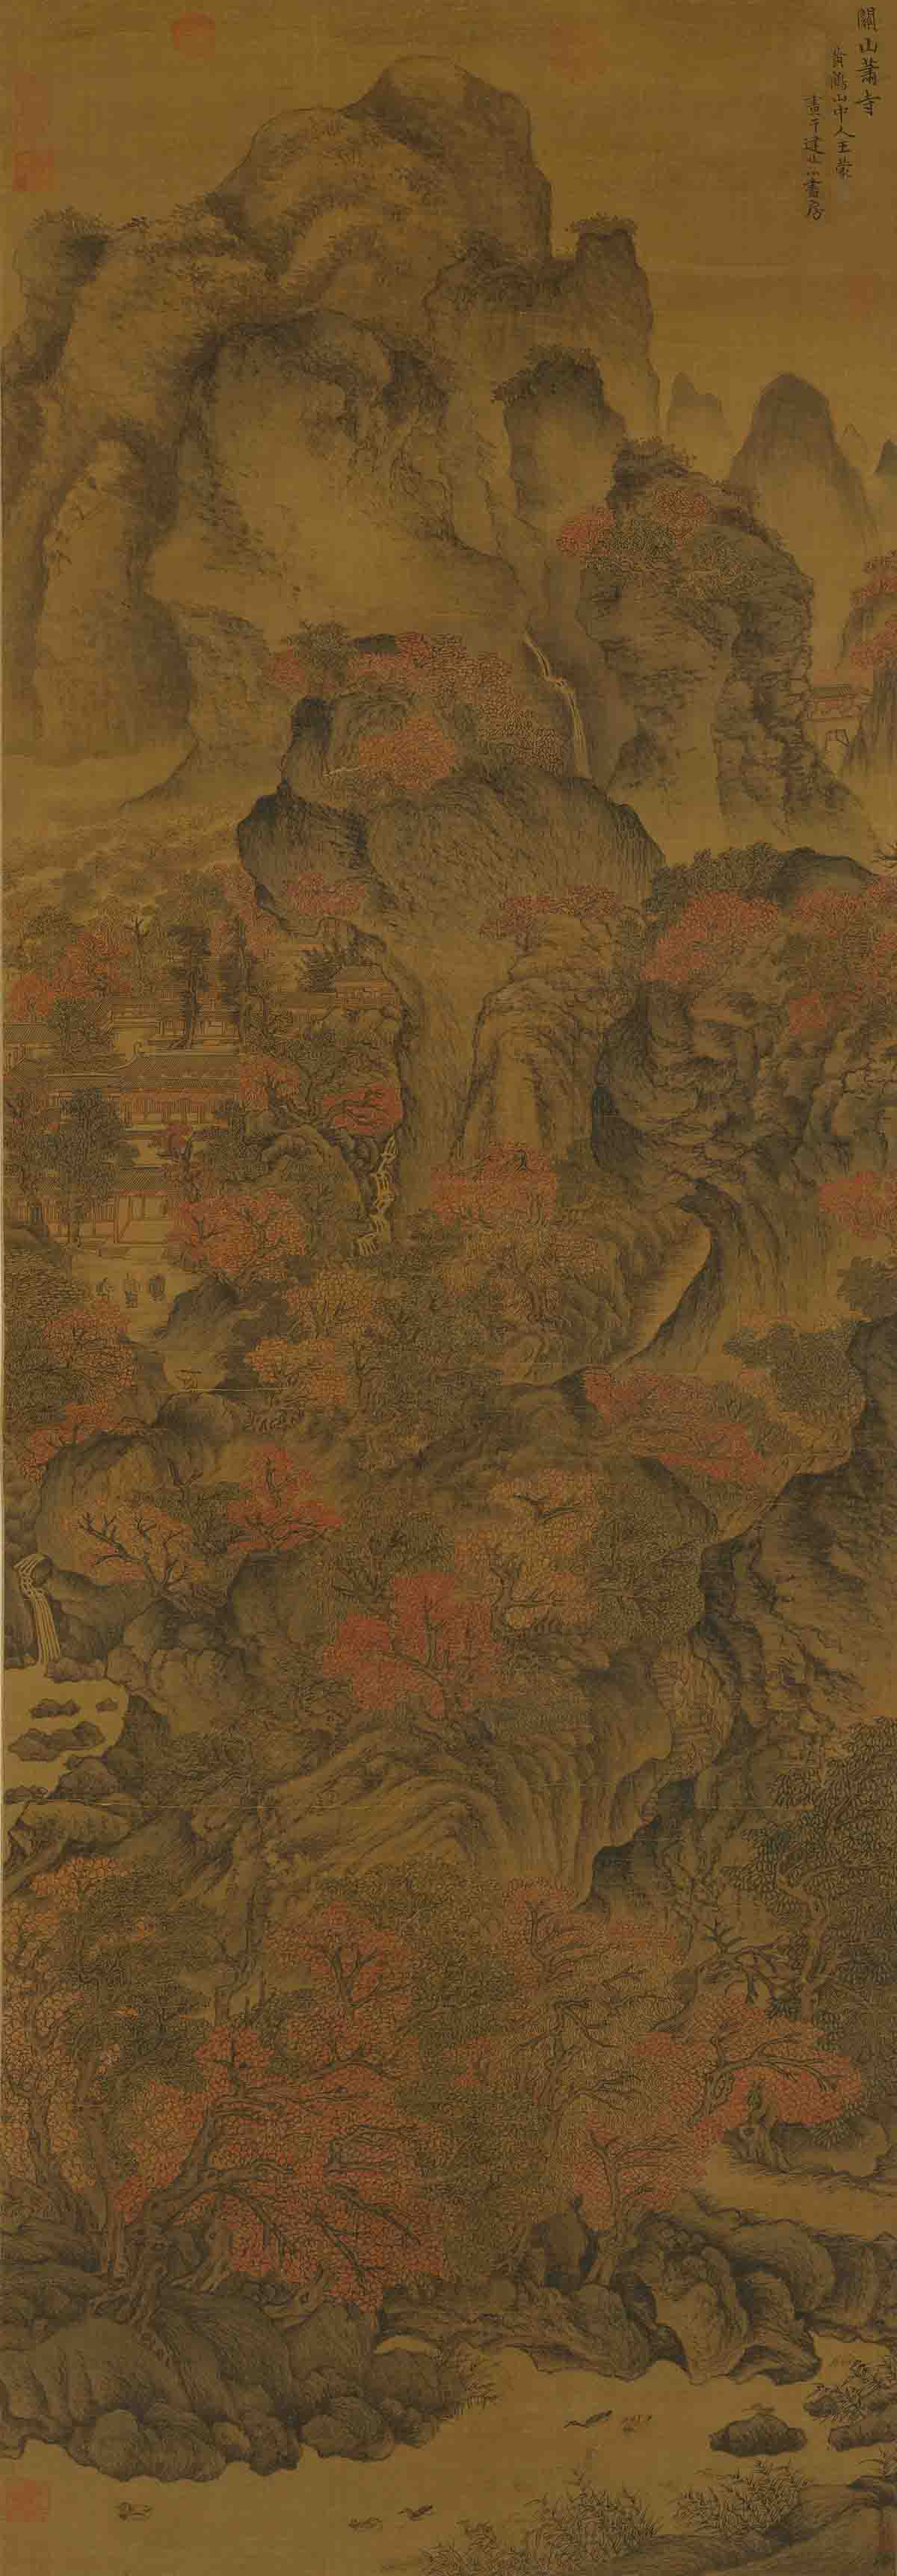 元 王蒙 关山箫寺图轴161.7x56